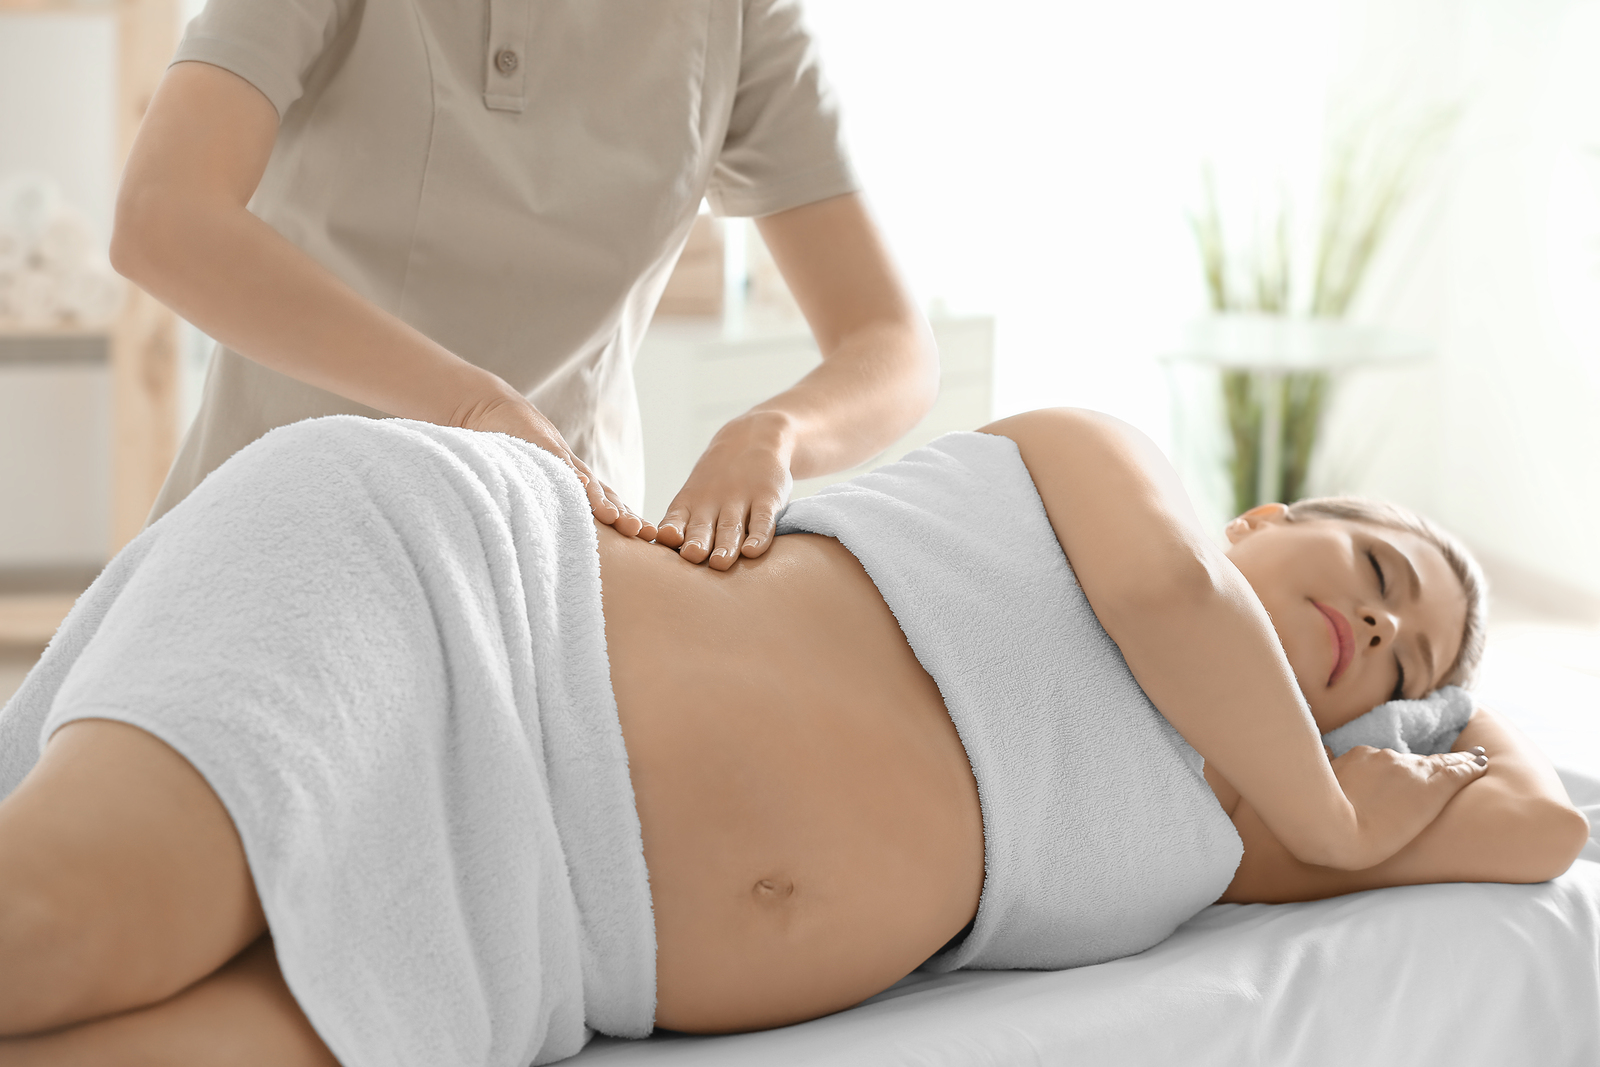 https://bendtotalbodychiropractic.com/wp-content/uploads/2019/11/Pregnancy-Massage.jpg